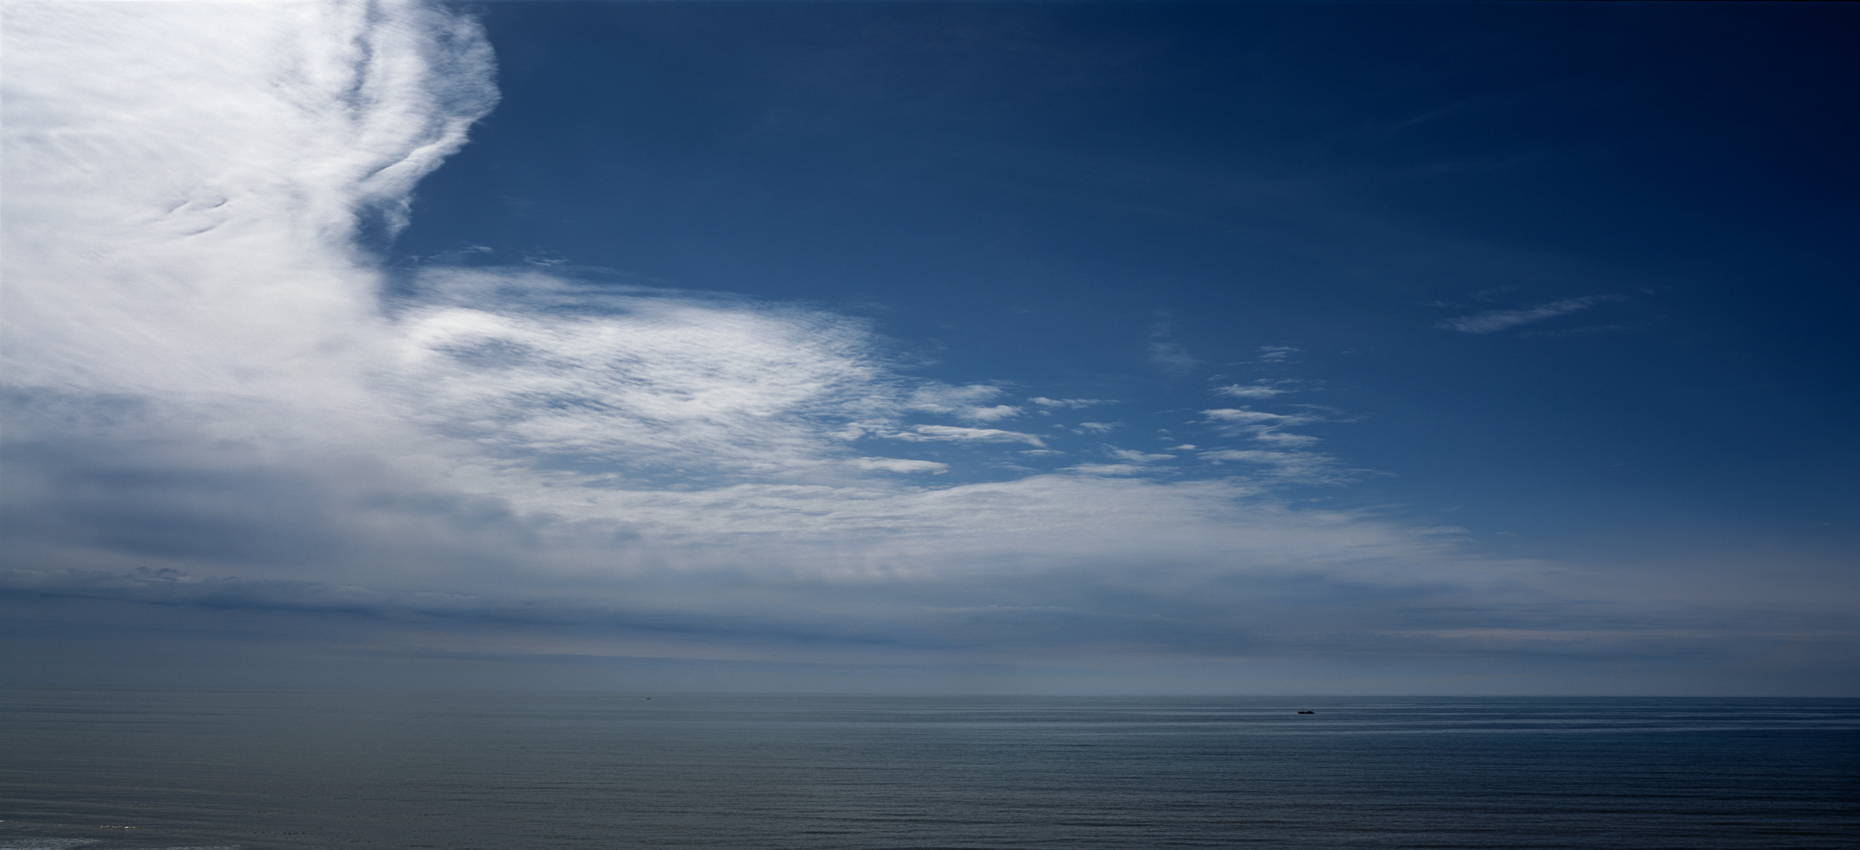 Jon Wyatt Photography - View out to sea, Brighton